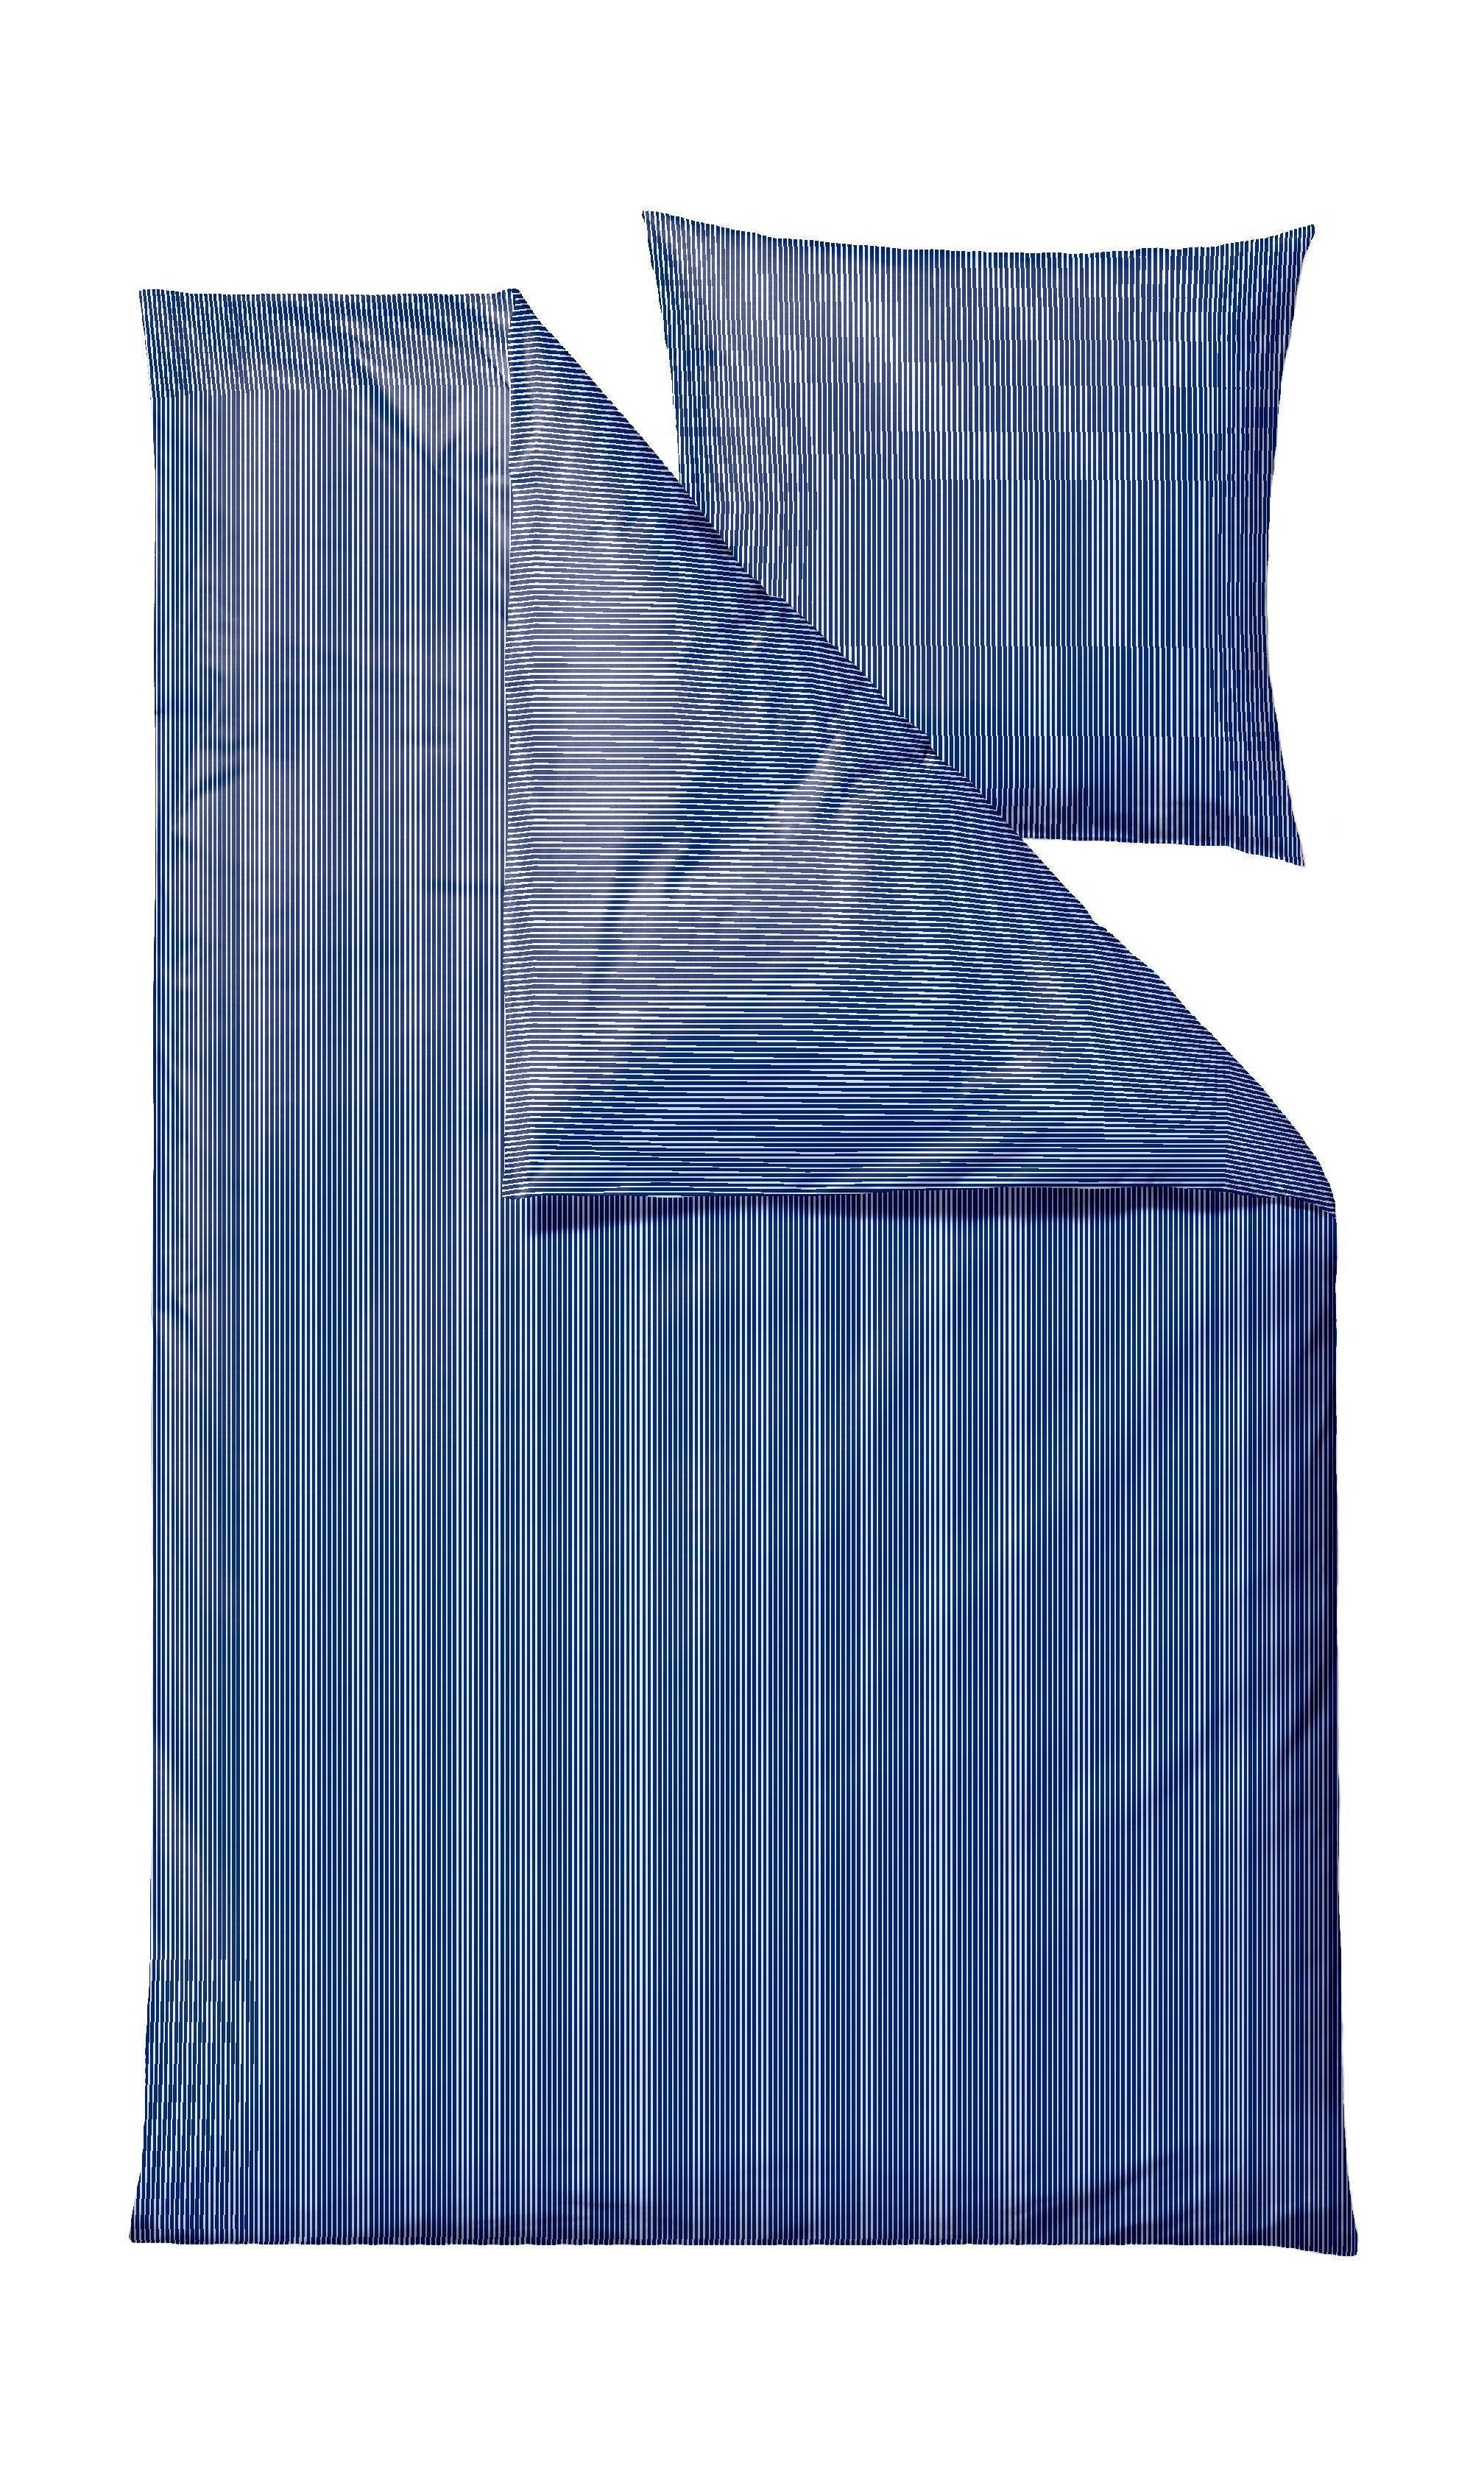 Södahl lino letto allegro 140 x 220 cm, blu reale